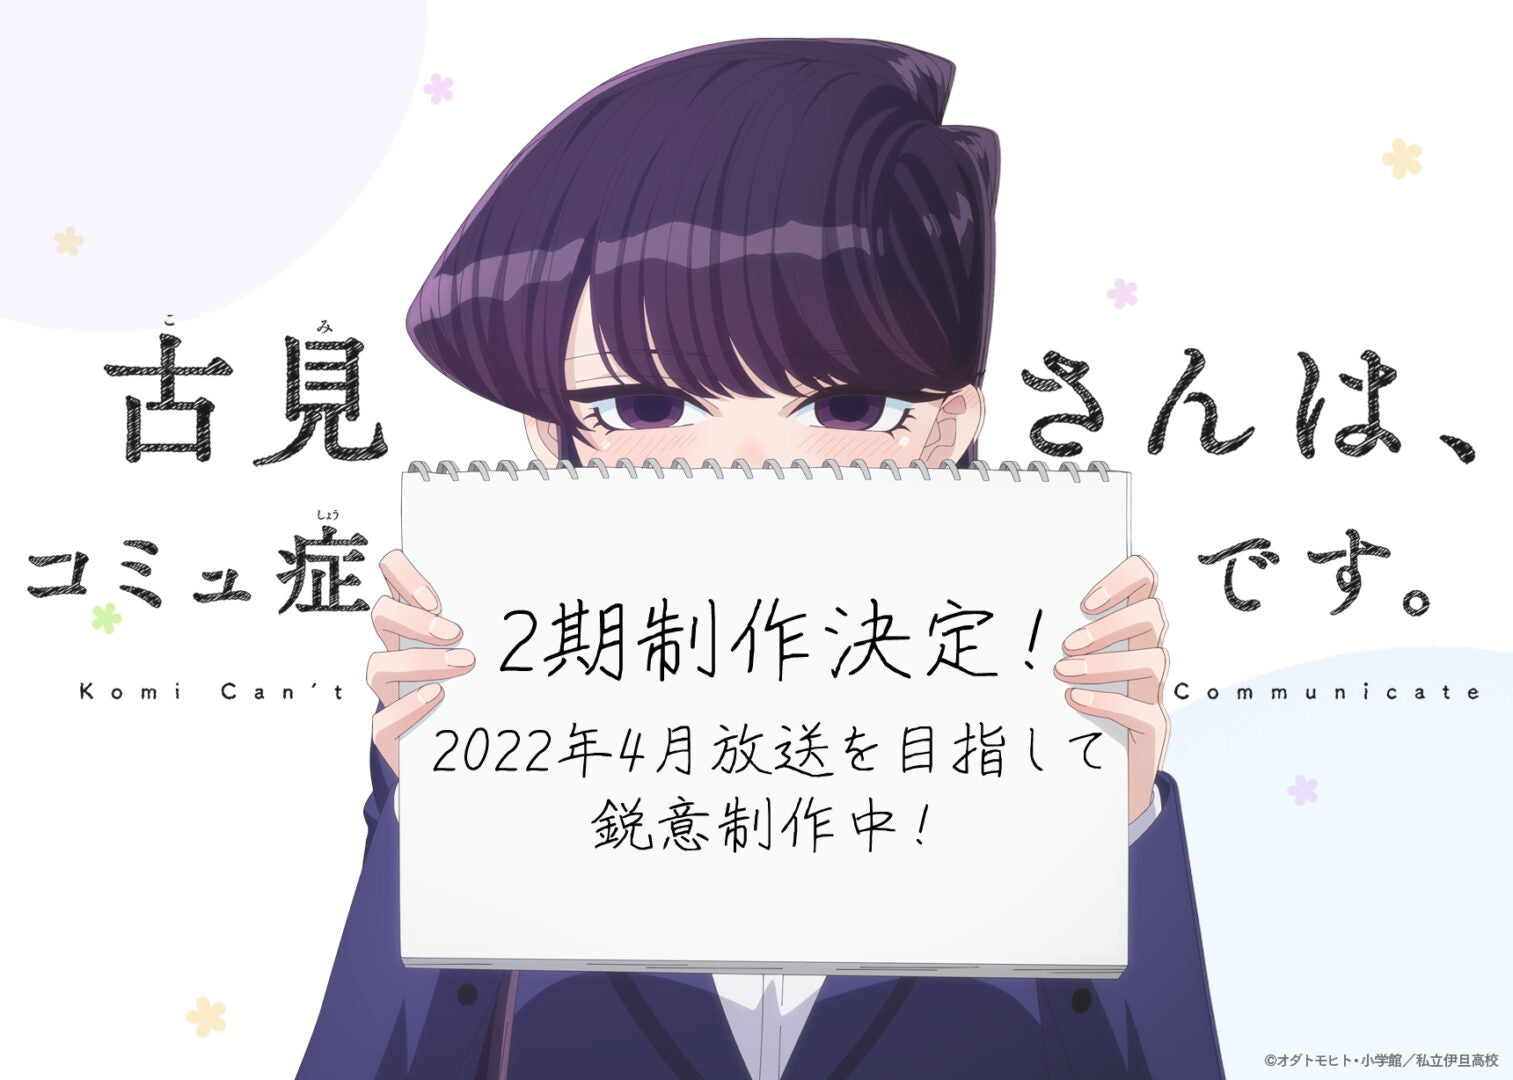 Komi-San Can’t Communicate Gets a Season 2